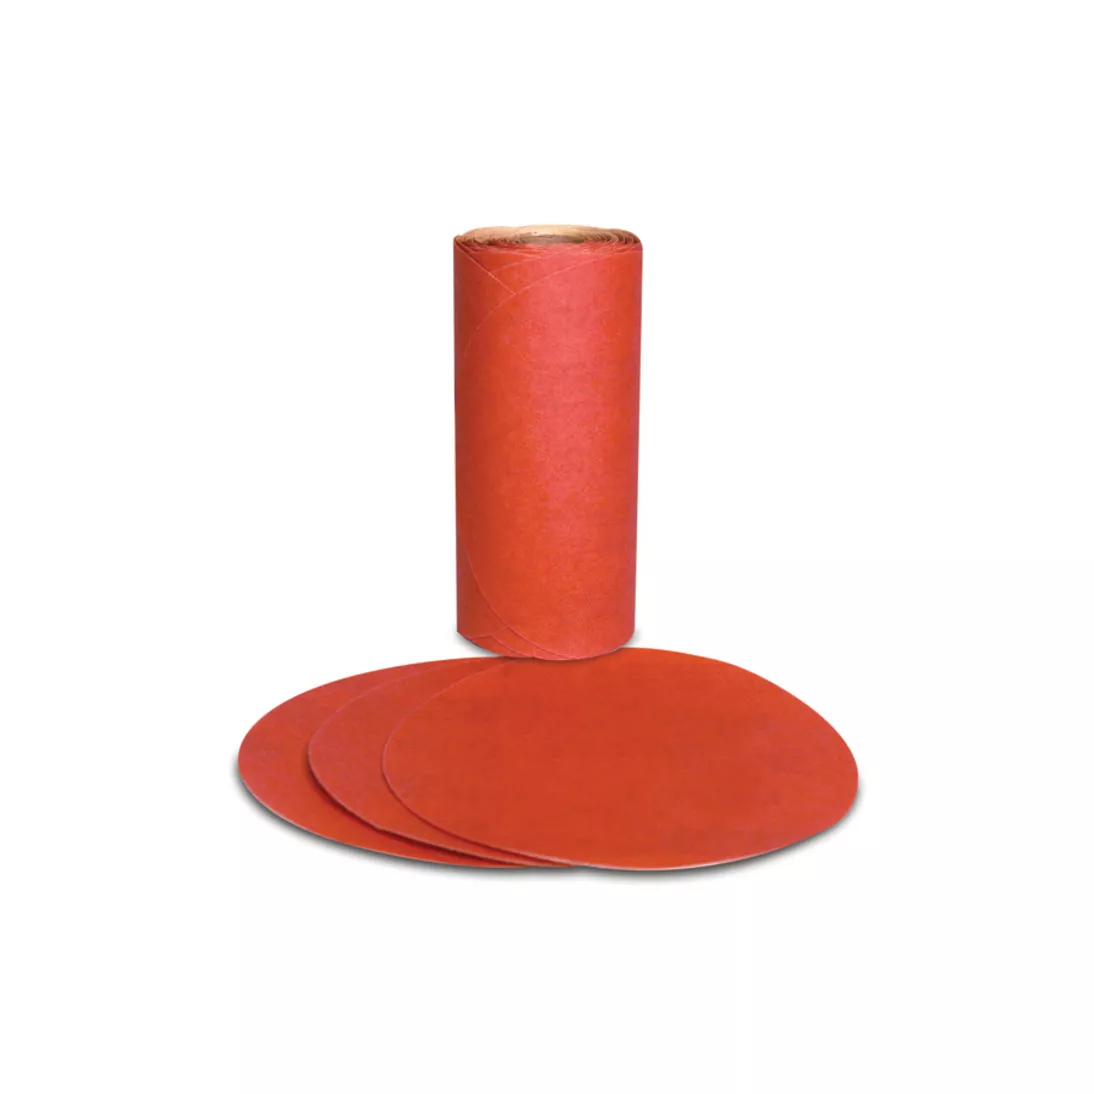 3M™ Red Abrasive PSA Disc, 01606, 5 in, P180, 100 discs per roll, 6
rolls per case